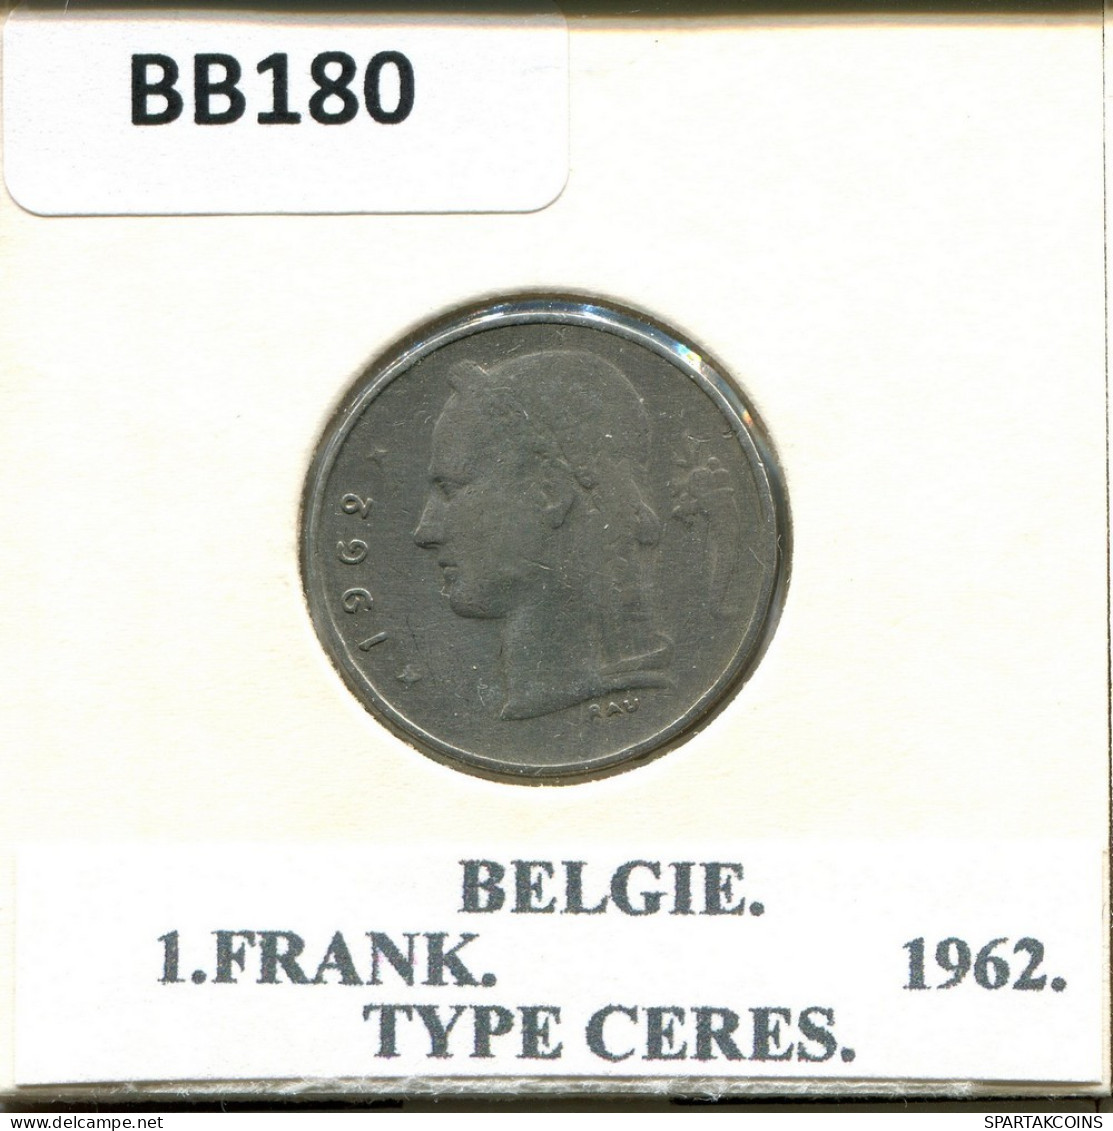 1 FRANC 1962 DUTCH Text BELGIUM Coin #BB180.U.A - 1 Franc